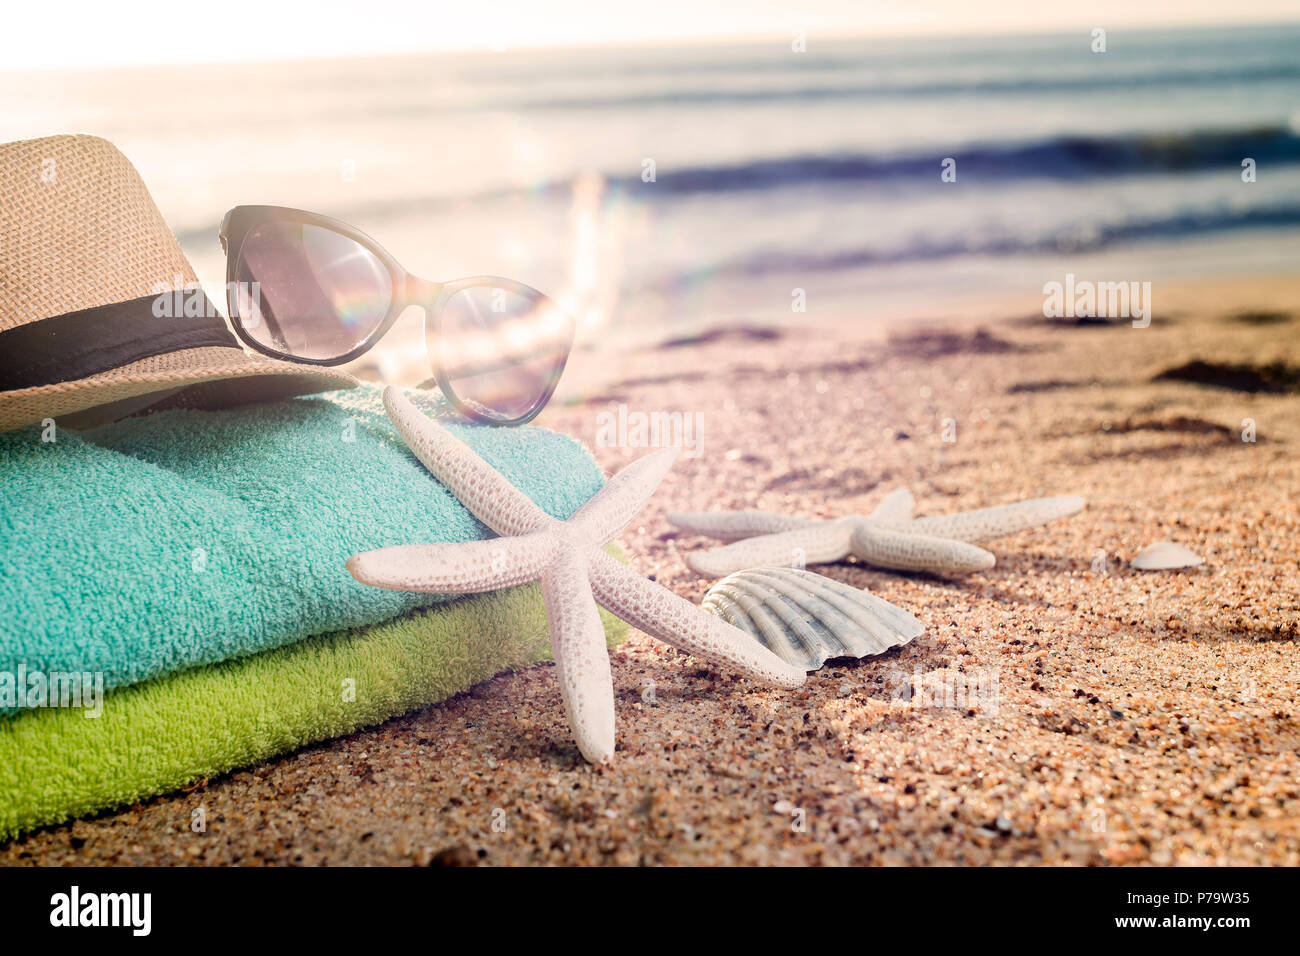 Sommer Zubehör wie bunte Handtücher, Stroh Hut, Sonnenbrille und Muscheln am Strand Stockfoto